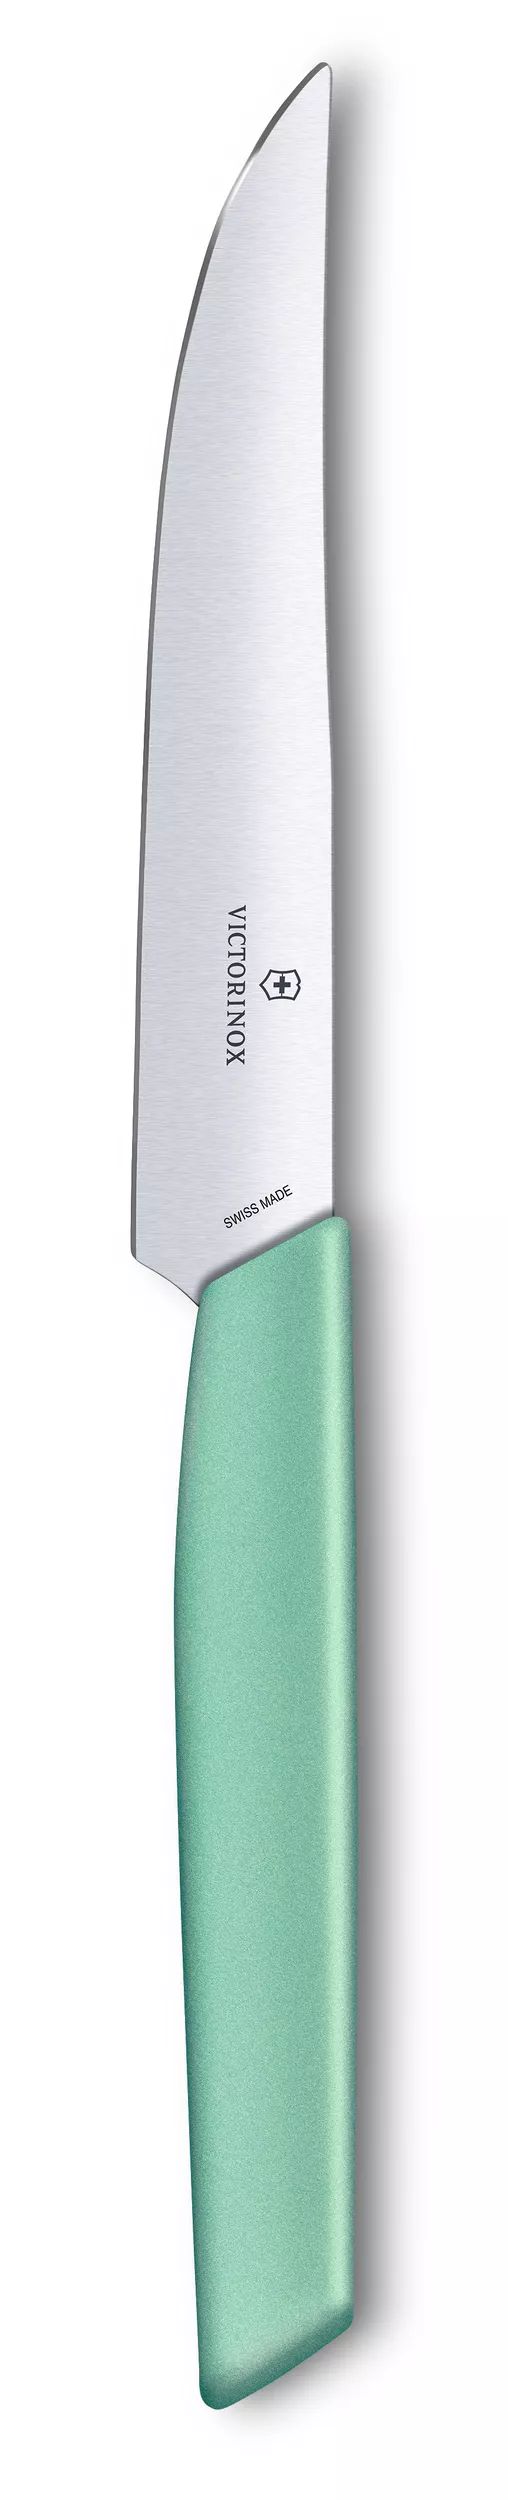 Swiss Modern Steak Knife - 6.9006.1241